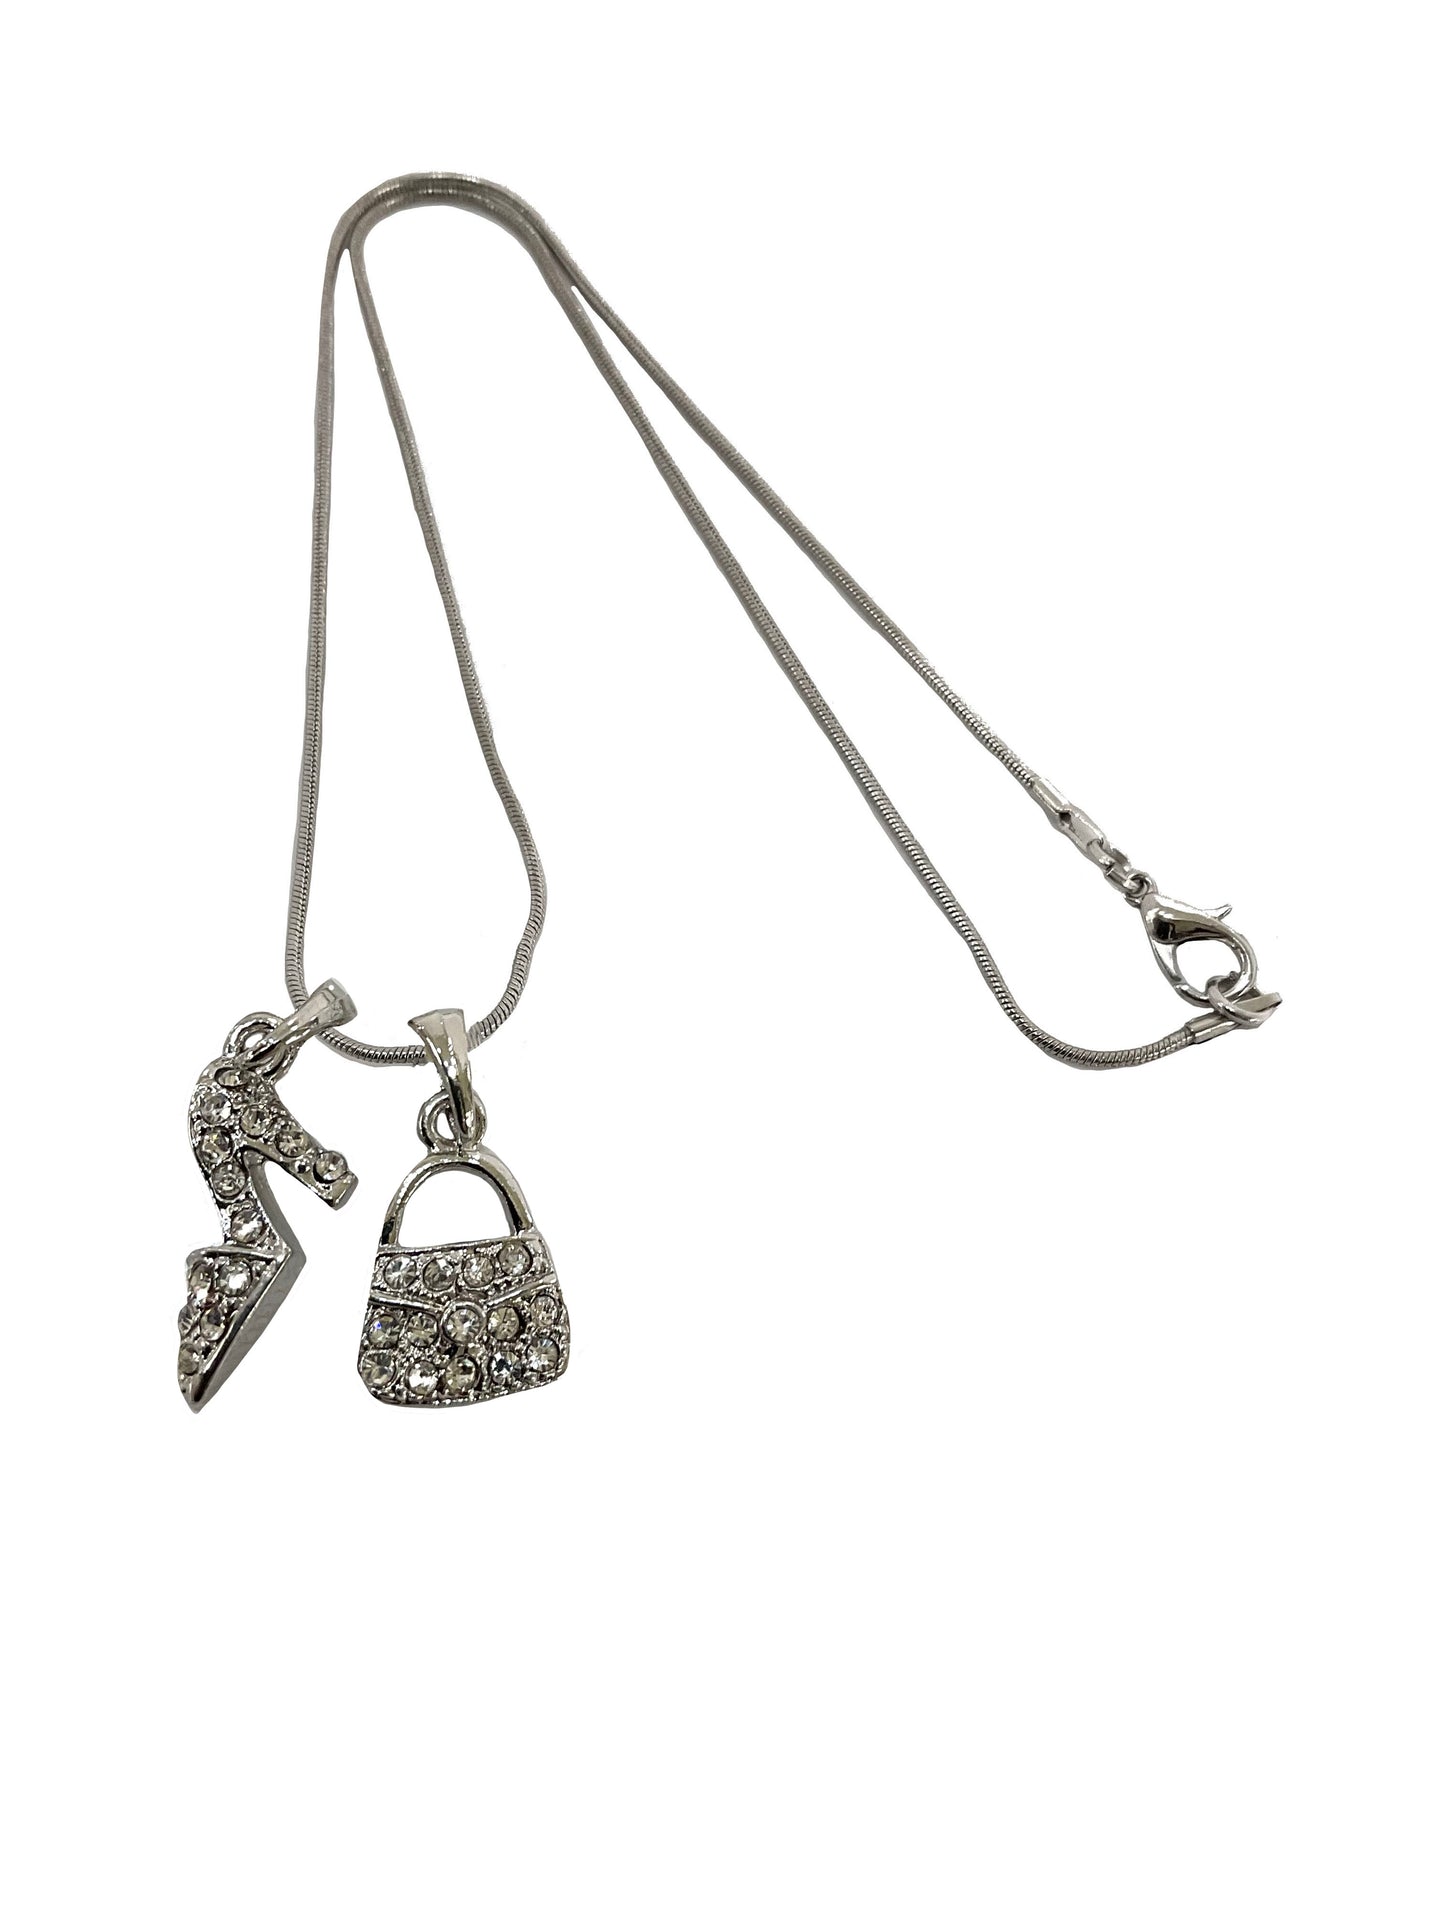 Shoe handbag Necklace #27-966